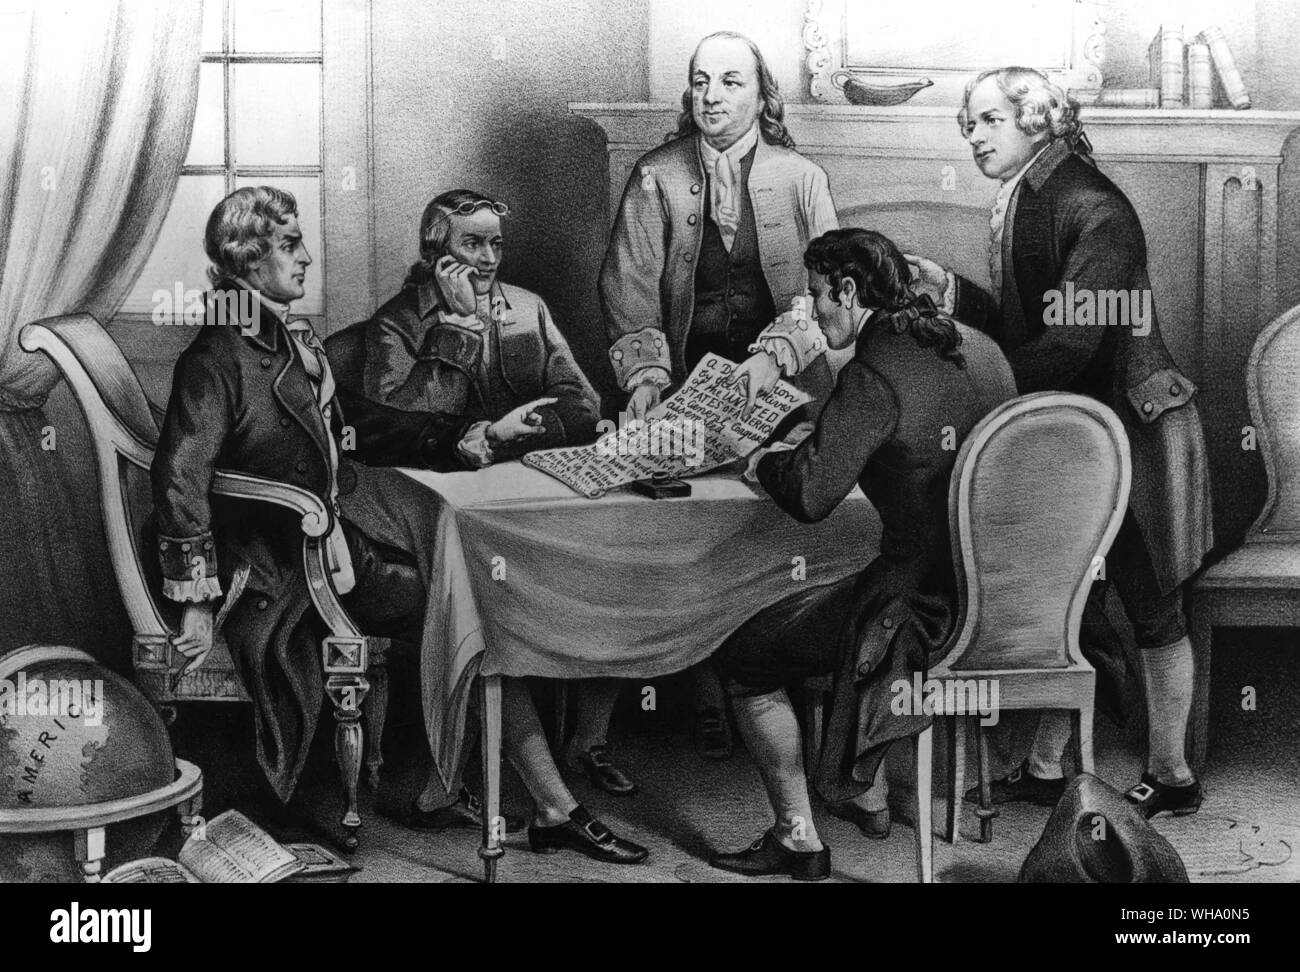 Fünf Mitglieder des Ausschusses, in der die Erklärung der Unabhängigkeit der Kongress der Vereinigten Staaten von Amerika. l-r berichtet: Thomas Jefferson, Roger Sherman, Benhjamin Franklin, Robert R. Livingston und John Adams. Am 1. Juli 1776. Erklärung wurde am 4. Juli 1776 unterzeichnet. Stockfoto